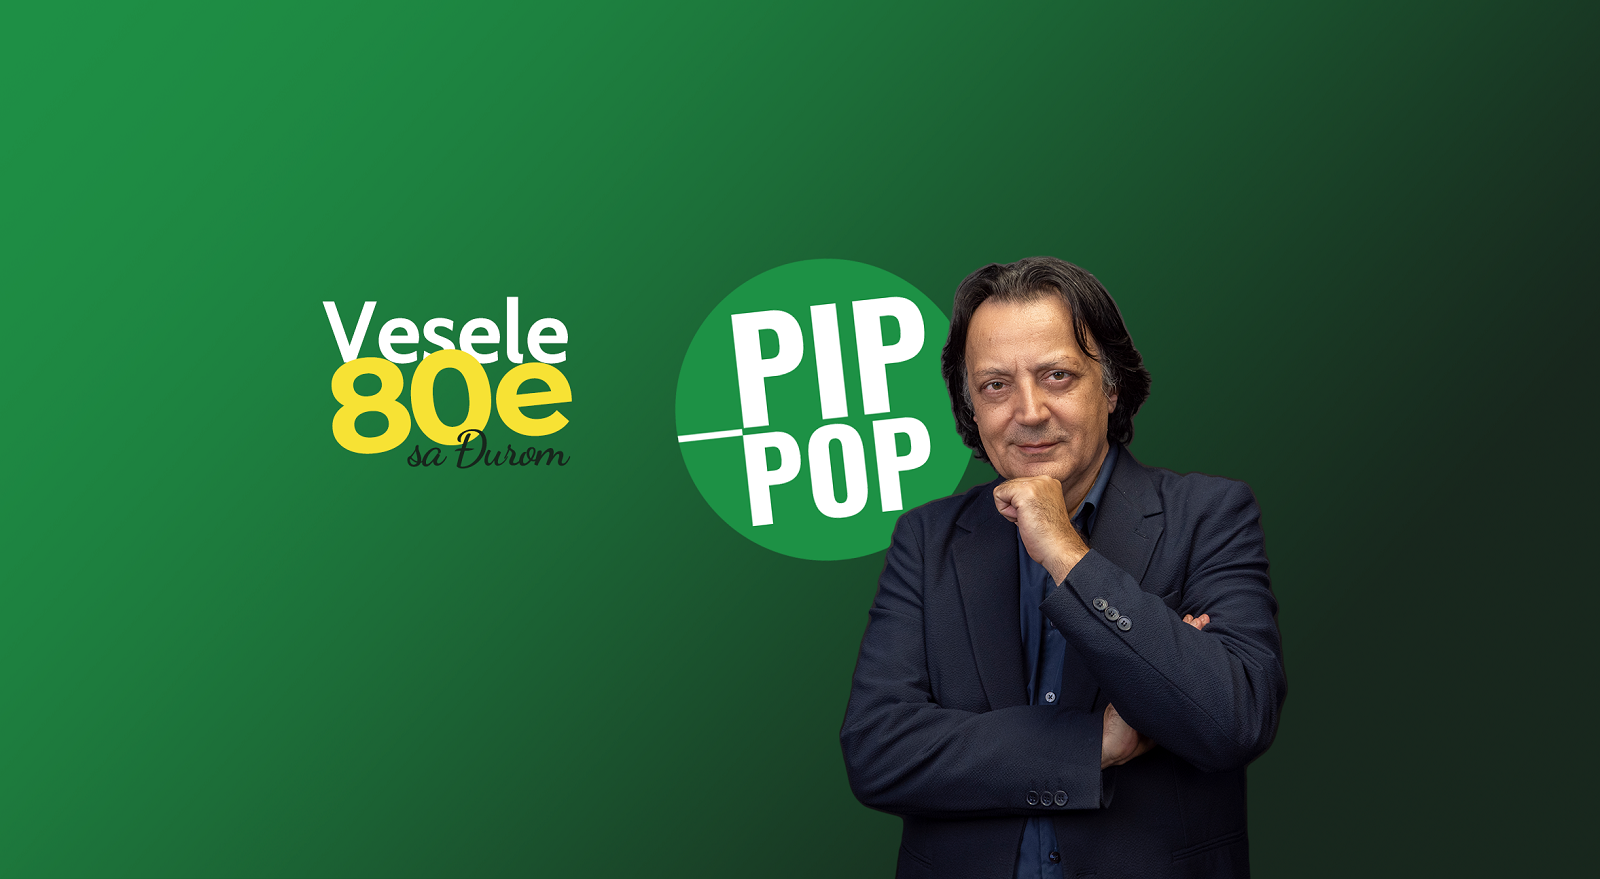 Gost novog podkasta „Vesele 80e sa Đurom PIP POP" je Milan Đurđević